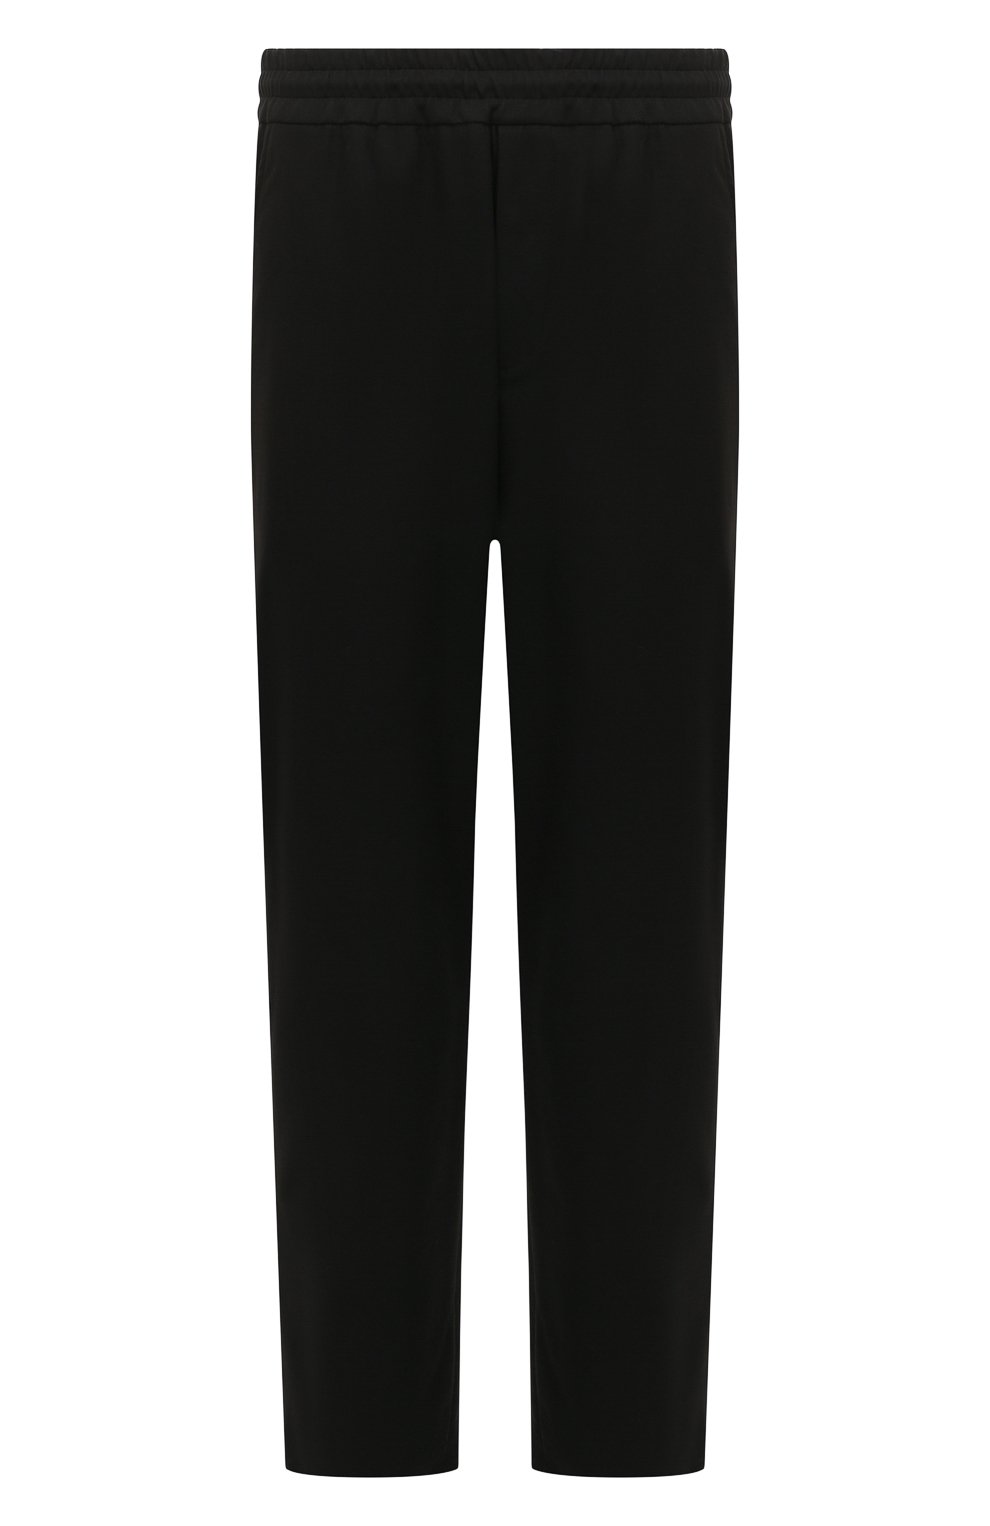 Мужские хлопковые брюки HARRIS WHARF LONDON черного цвета, арт. C7015PTA | Фото 1 (Длина (брюки, джинсы): Стандартные; Случай: Повседневный; Стили: Милитари, Кэжуэл; Материал внешний: Хлопок)